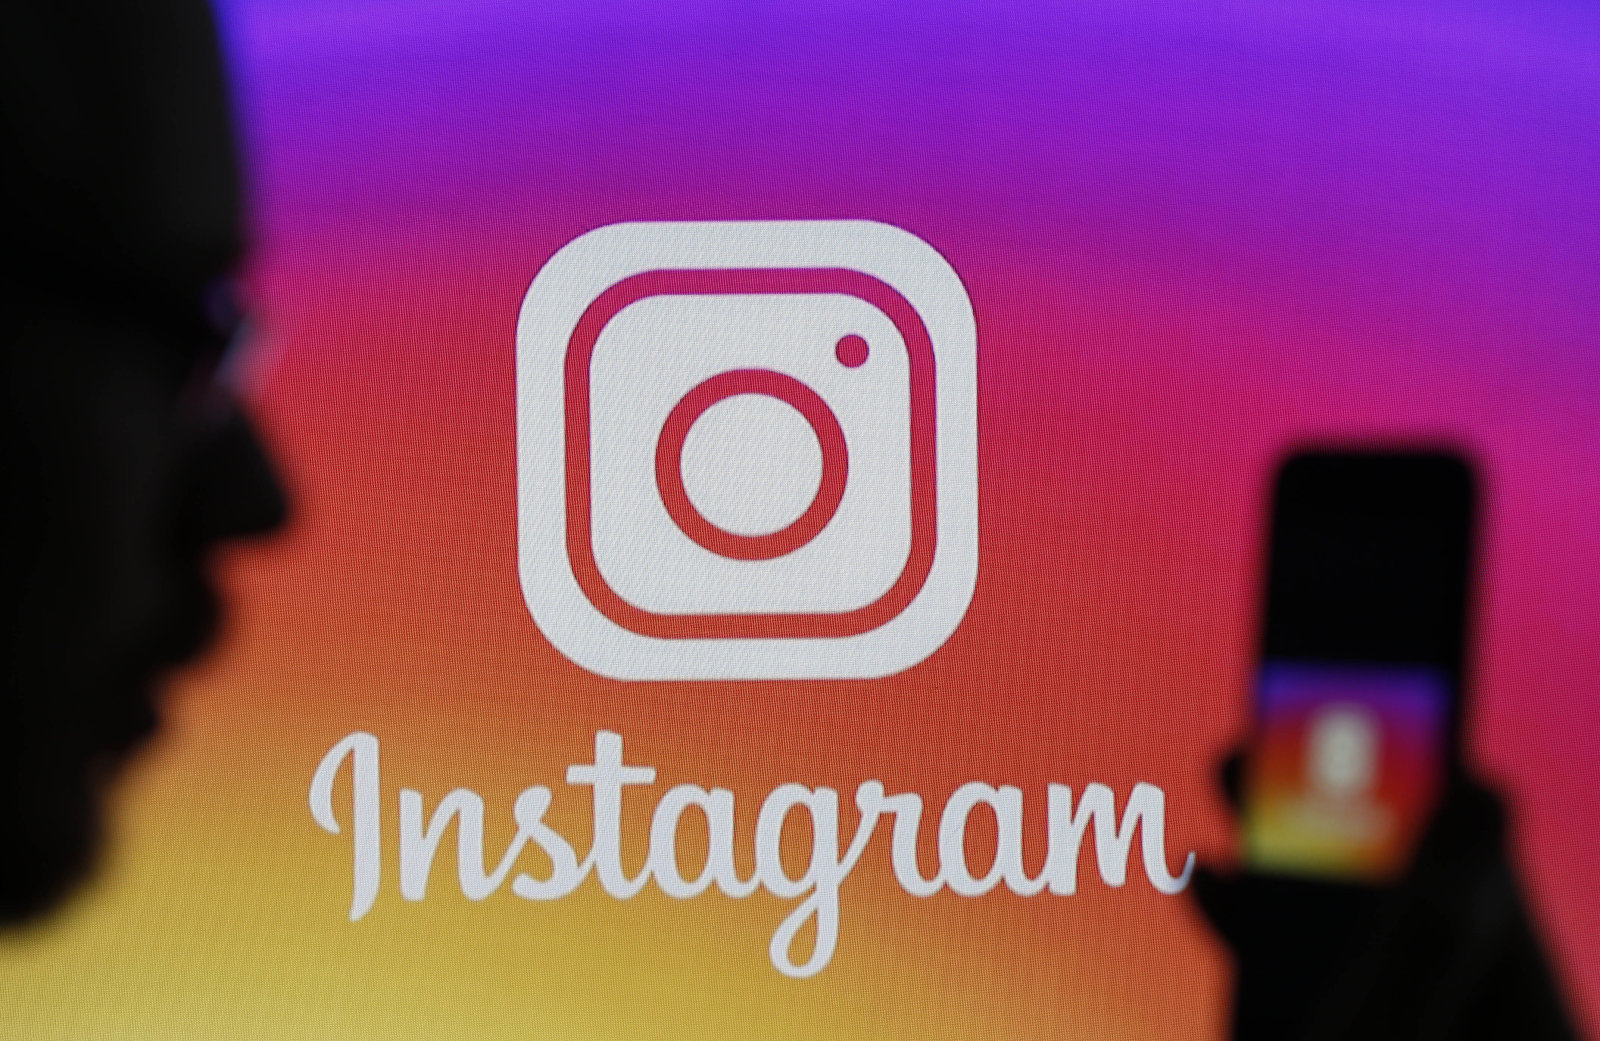 Instagram vám brzy umožní odvolat se proti odstraněnému příspěvku